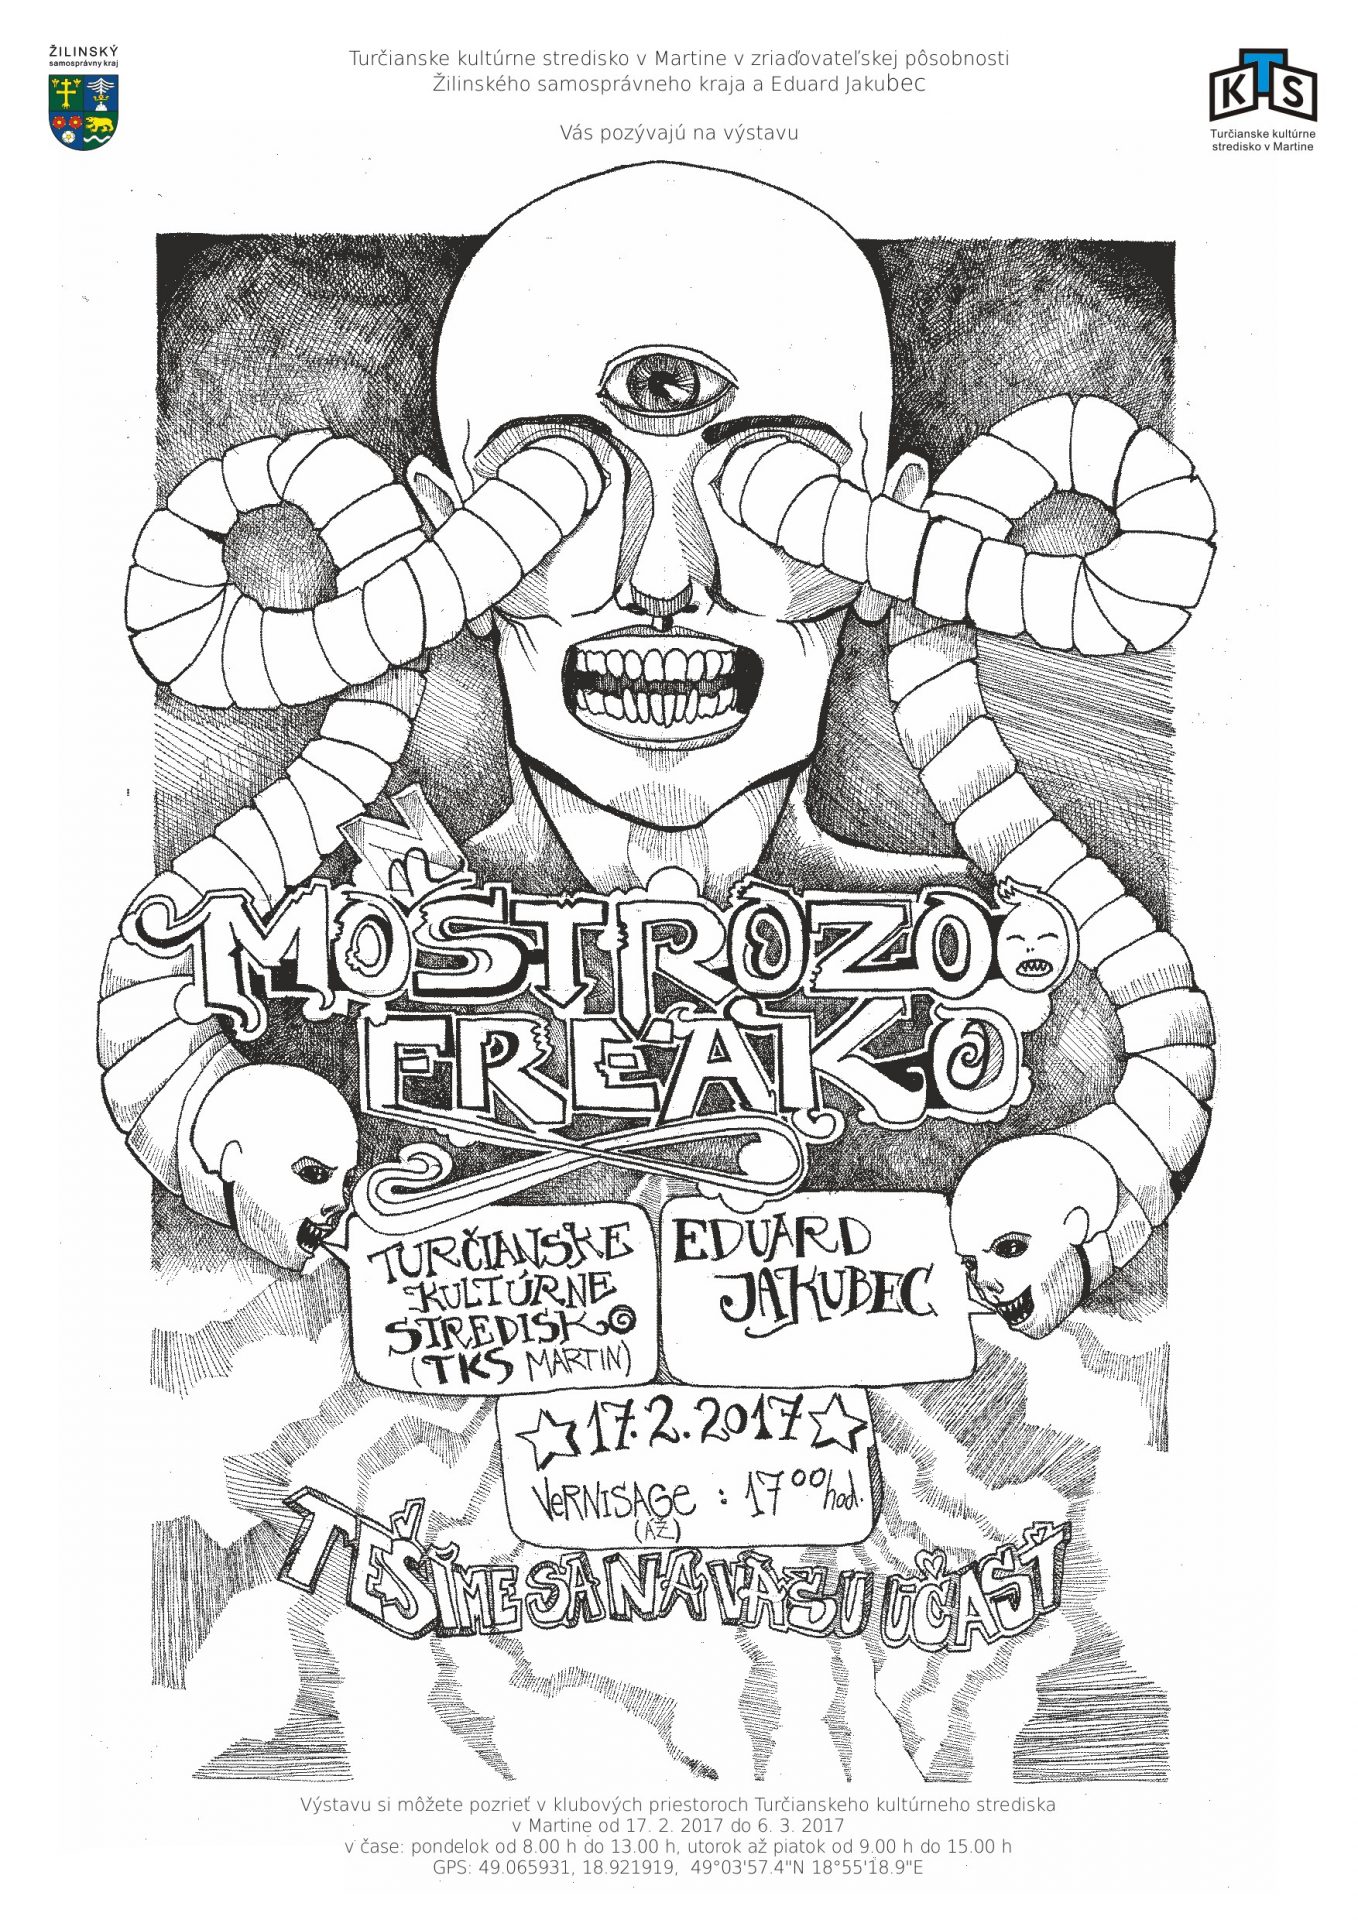 , Výstava Monstrozoo-freako: Mi vravia, že som zvláštny človek, tak si aj zvláštne kreslím